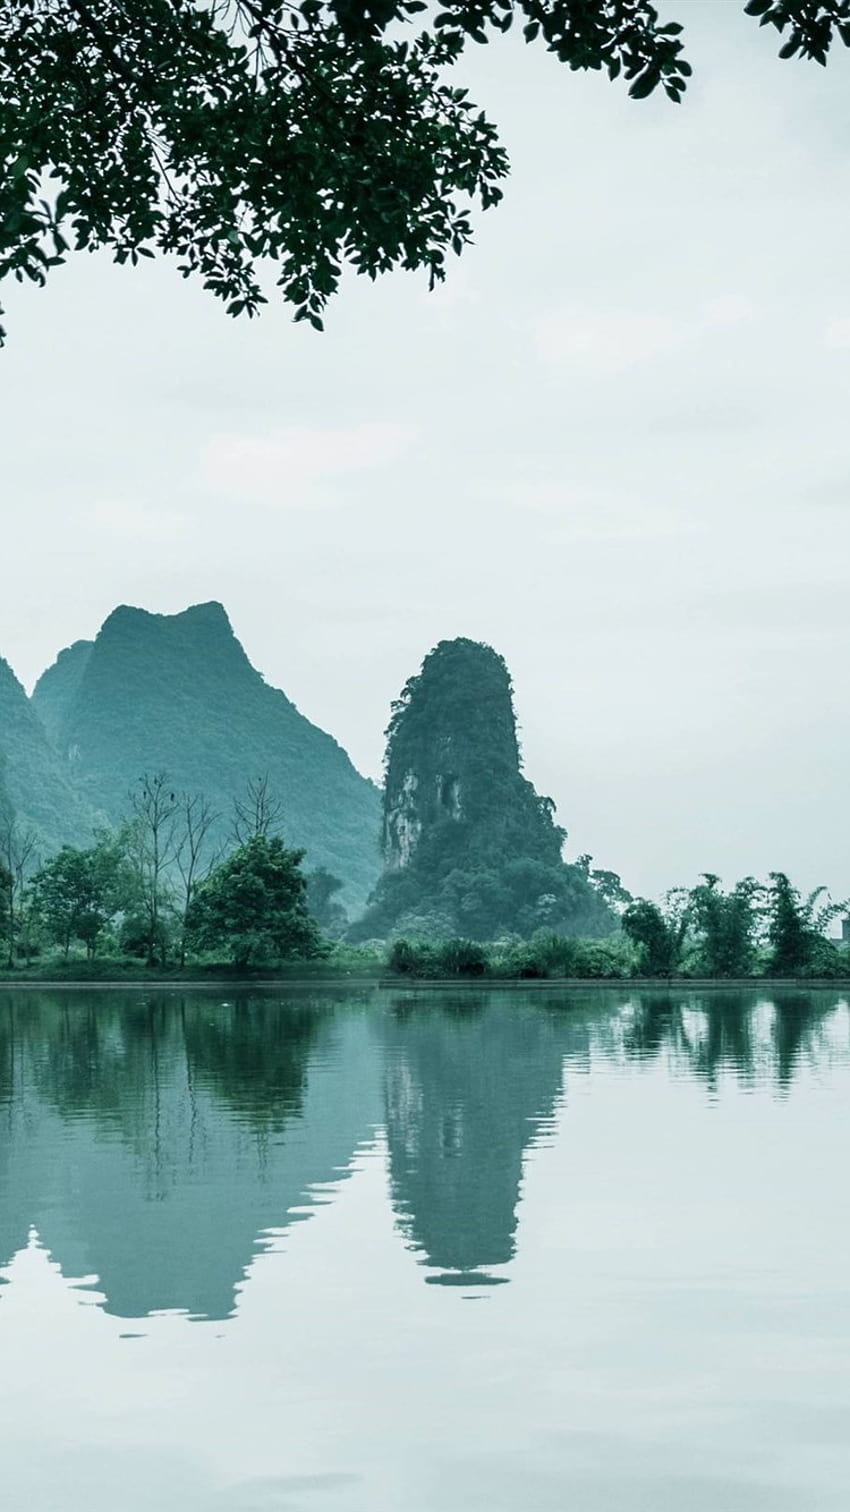 Trung Quốc nổi tiếng với những phong cảnh thiên nhiên tuyệt đẹp, từ những ngọn núi cao chọc trời, những hồ nước trong xanh đến những rừng cây rợp bóng. Hãy cùng khám phá bộ ảnh iPhone 750x1334 với những hình nền tuyệt đẹp này và cảm nhận sự độc đáo và phiêu lưu của trải nghiệm tự nhiên. 